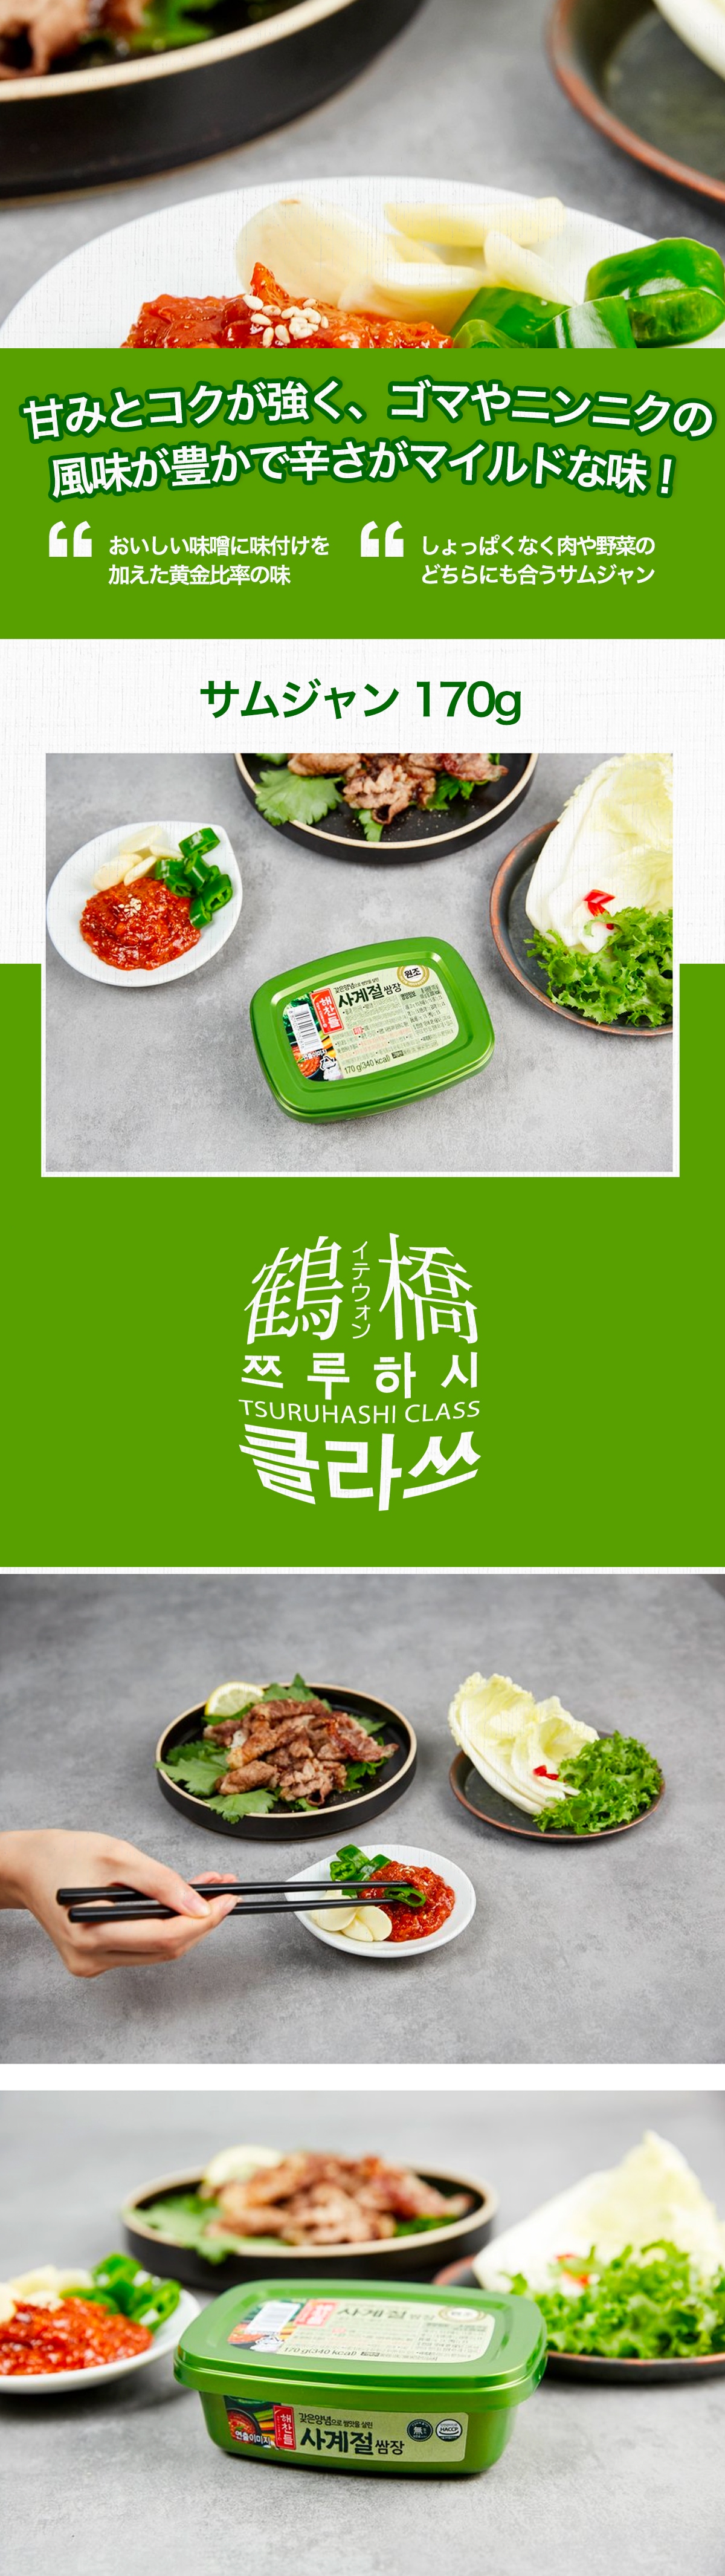 鶴橋クラスの通販 | ヘチャンドル サムジャン 1kg | 韓国の調味料 | 鶴橋クラス